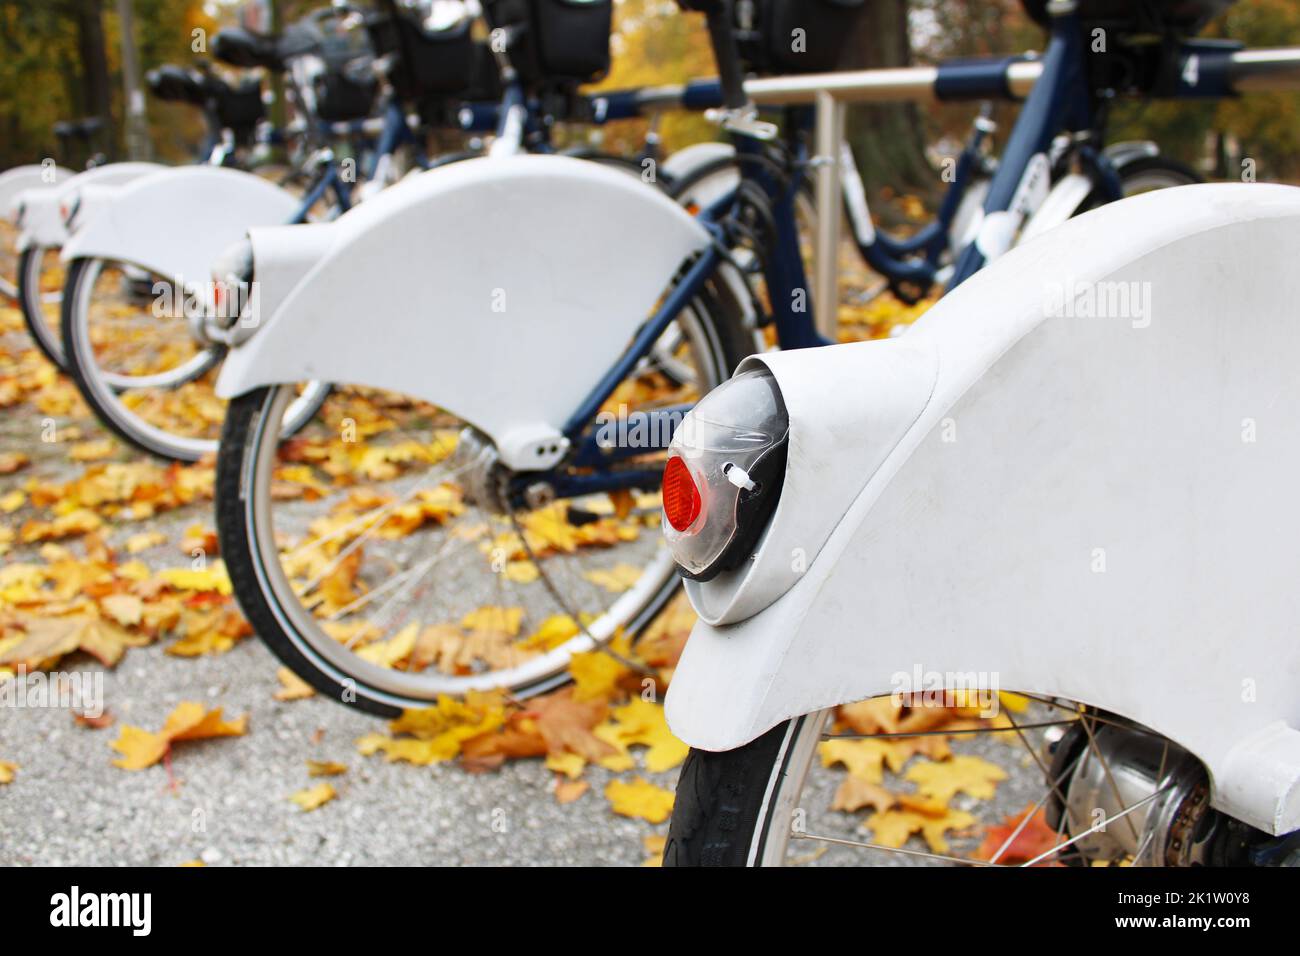 pneus de vélo sur la station de location de vélos en automne Banque D'Images